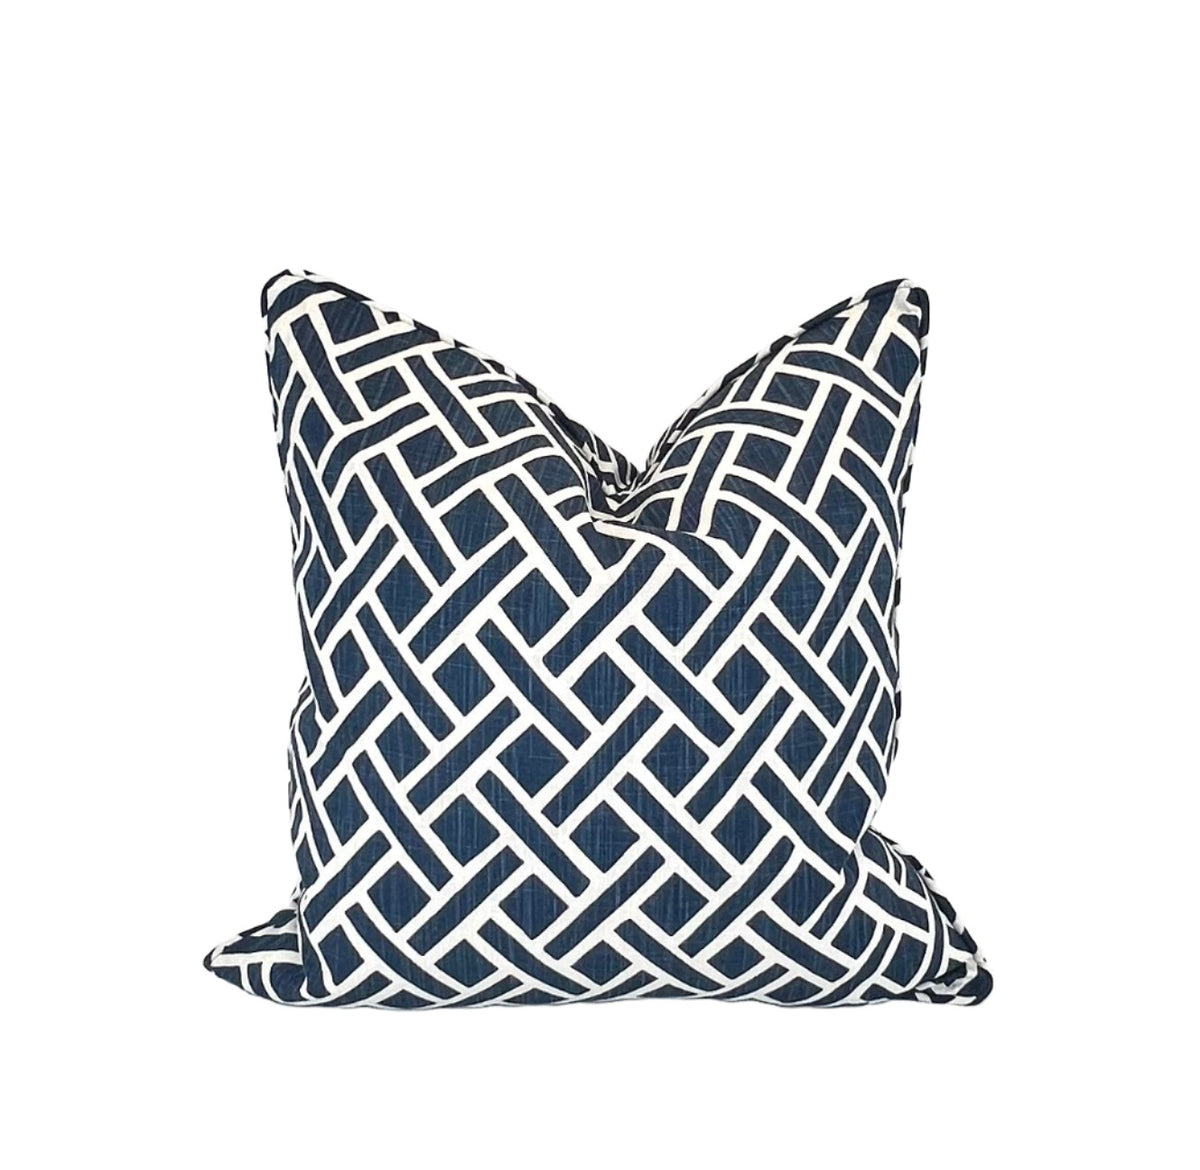 Decorative Pillow Cover in Blue Geometric Denim